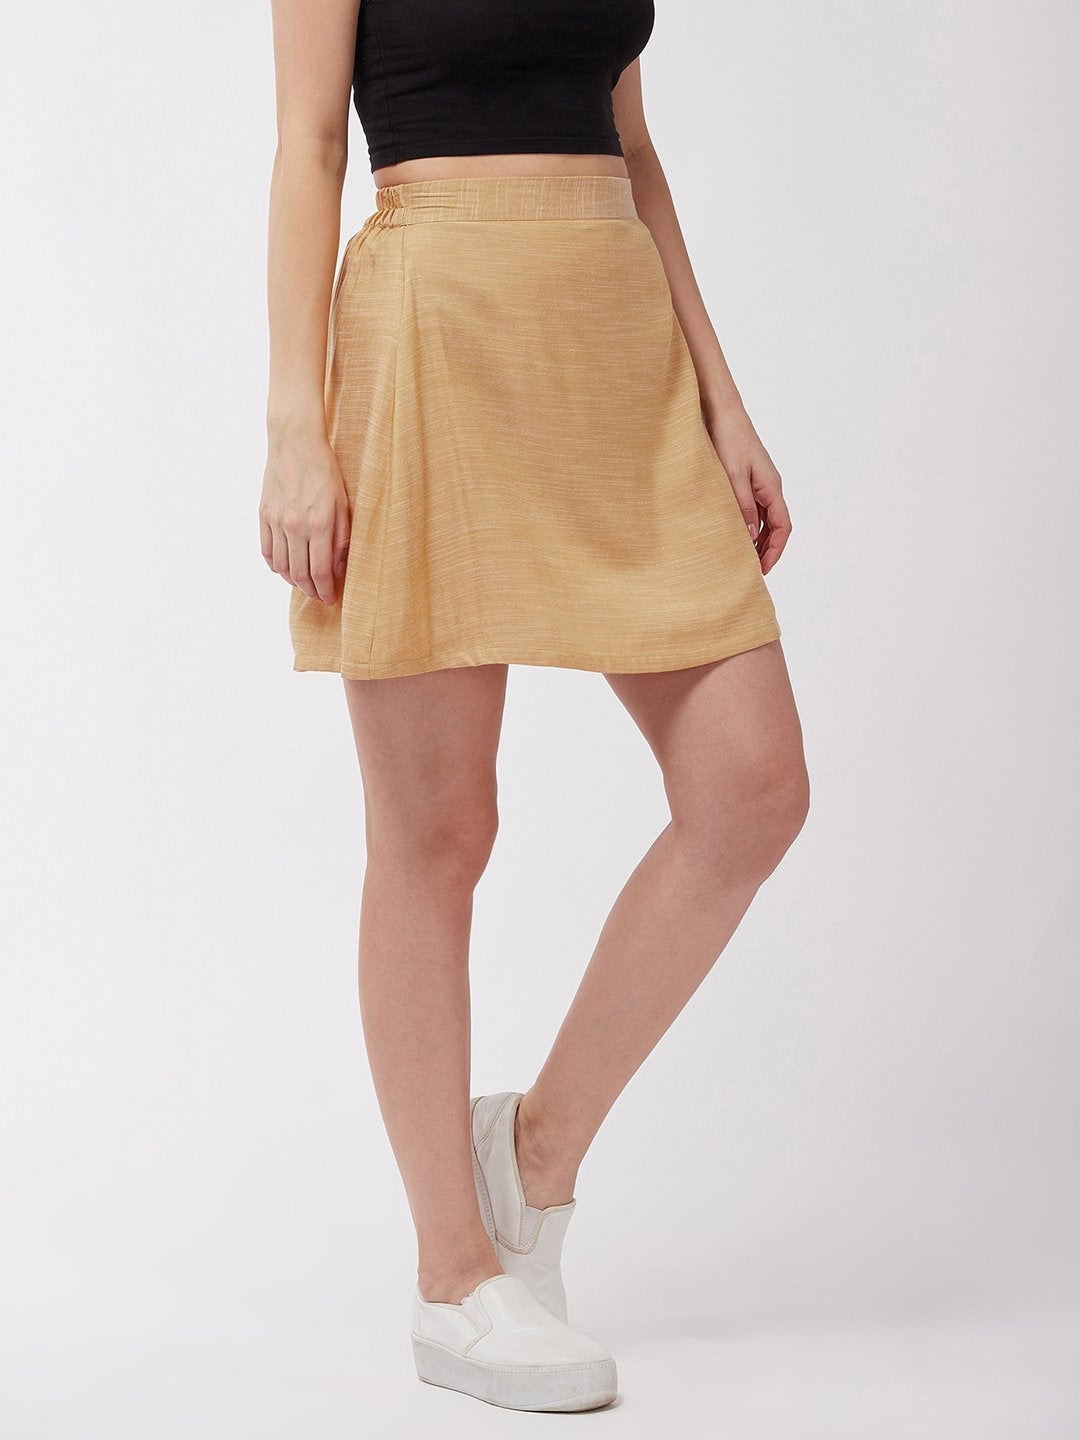 Women's Flaxen Yellow Short Skirt - InWeave